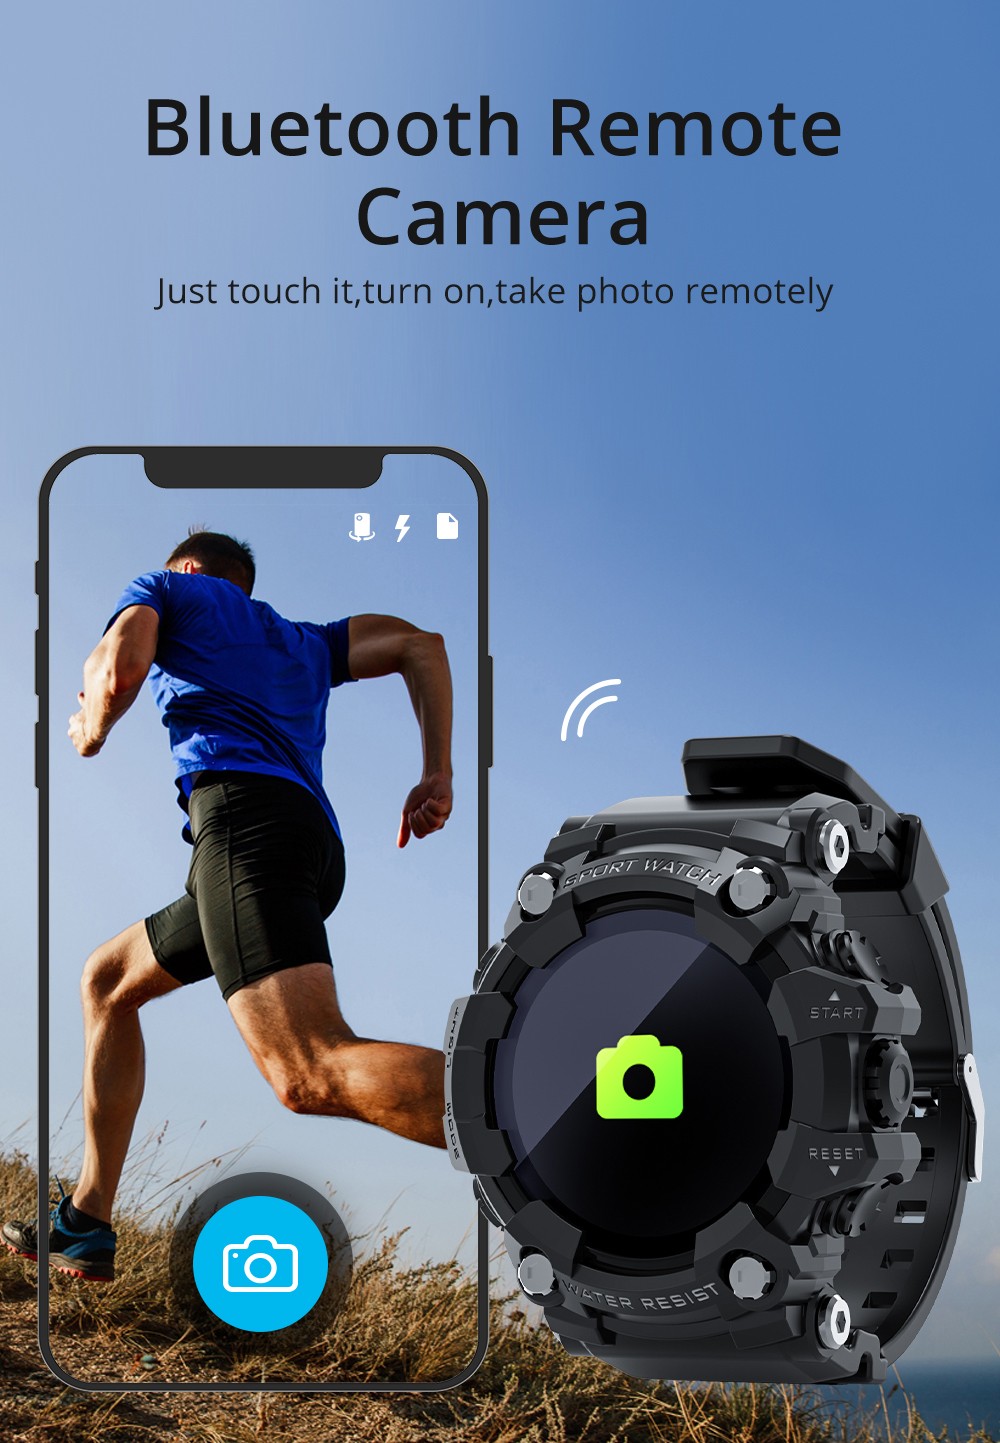 LOKMAT ATTACK Bluetooth Smartwatch 1.28 inç TFT Dokunmatik Ekran Nabız Kan Basıncı Monitörü IP68 Suya Dayanıklı 25 Gün Bekleme Süresi - Siyah